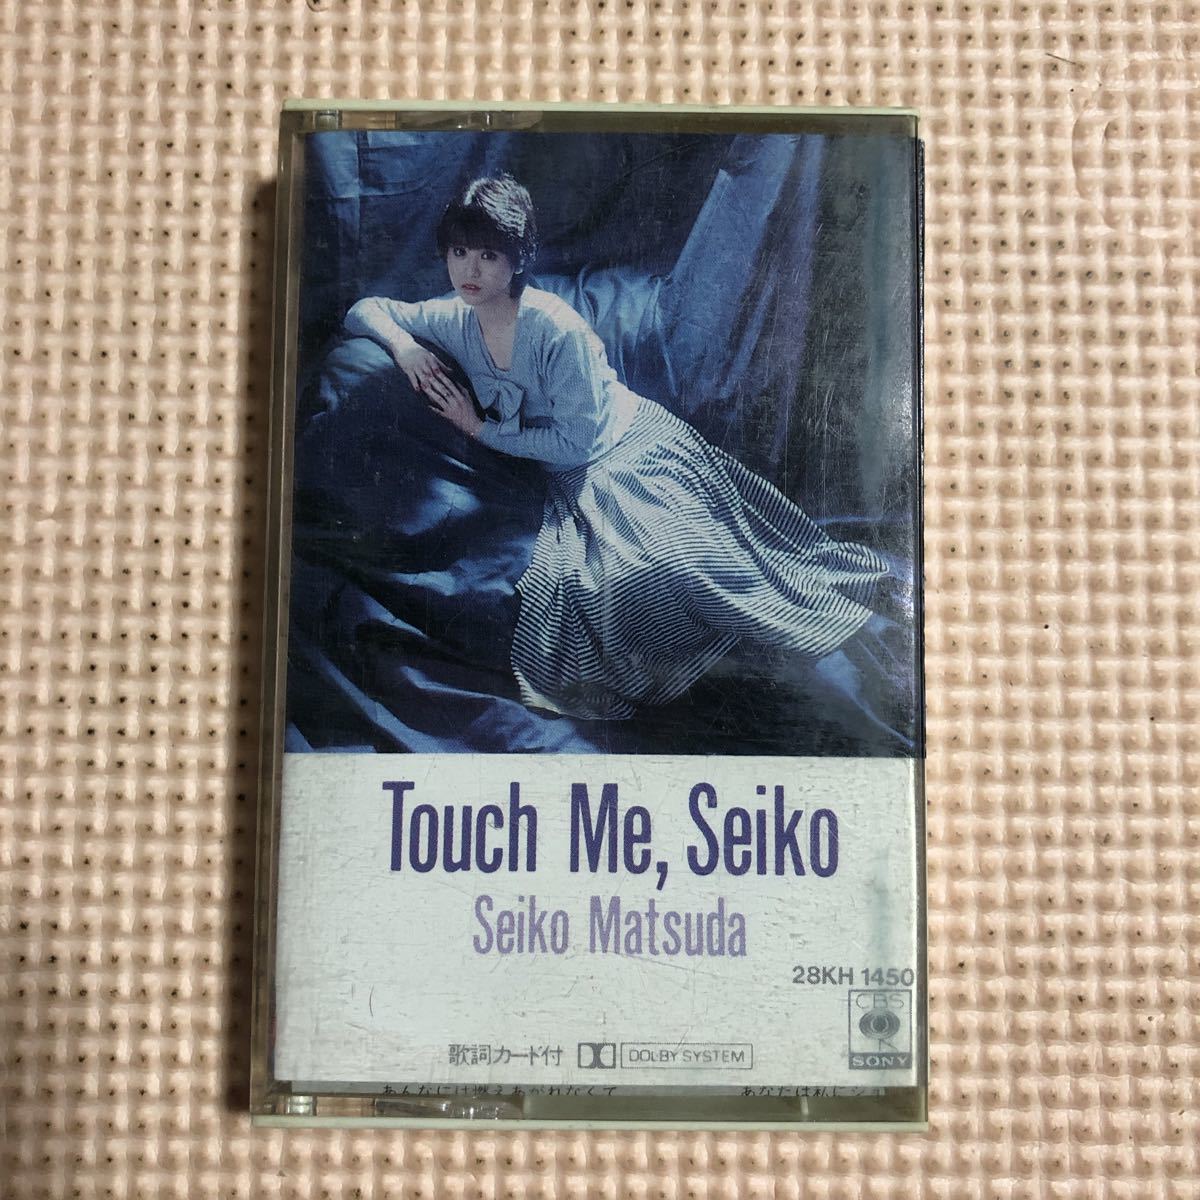 松田聖子 Touch Me, Seiko 【フォトカード付き】国内盤カセットテープ●の画像1